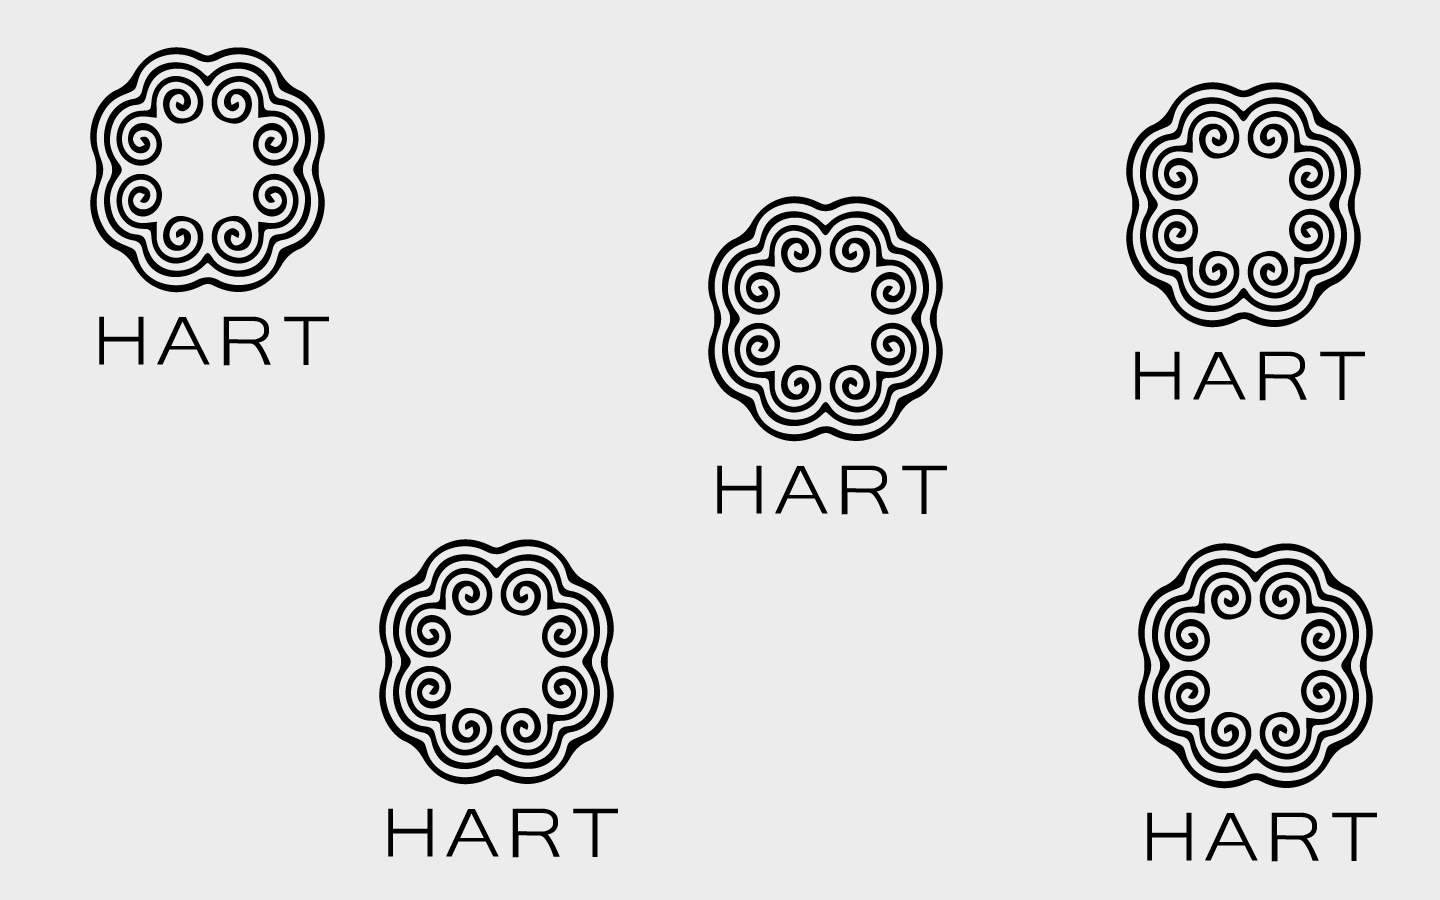 hart_logo.jpg